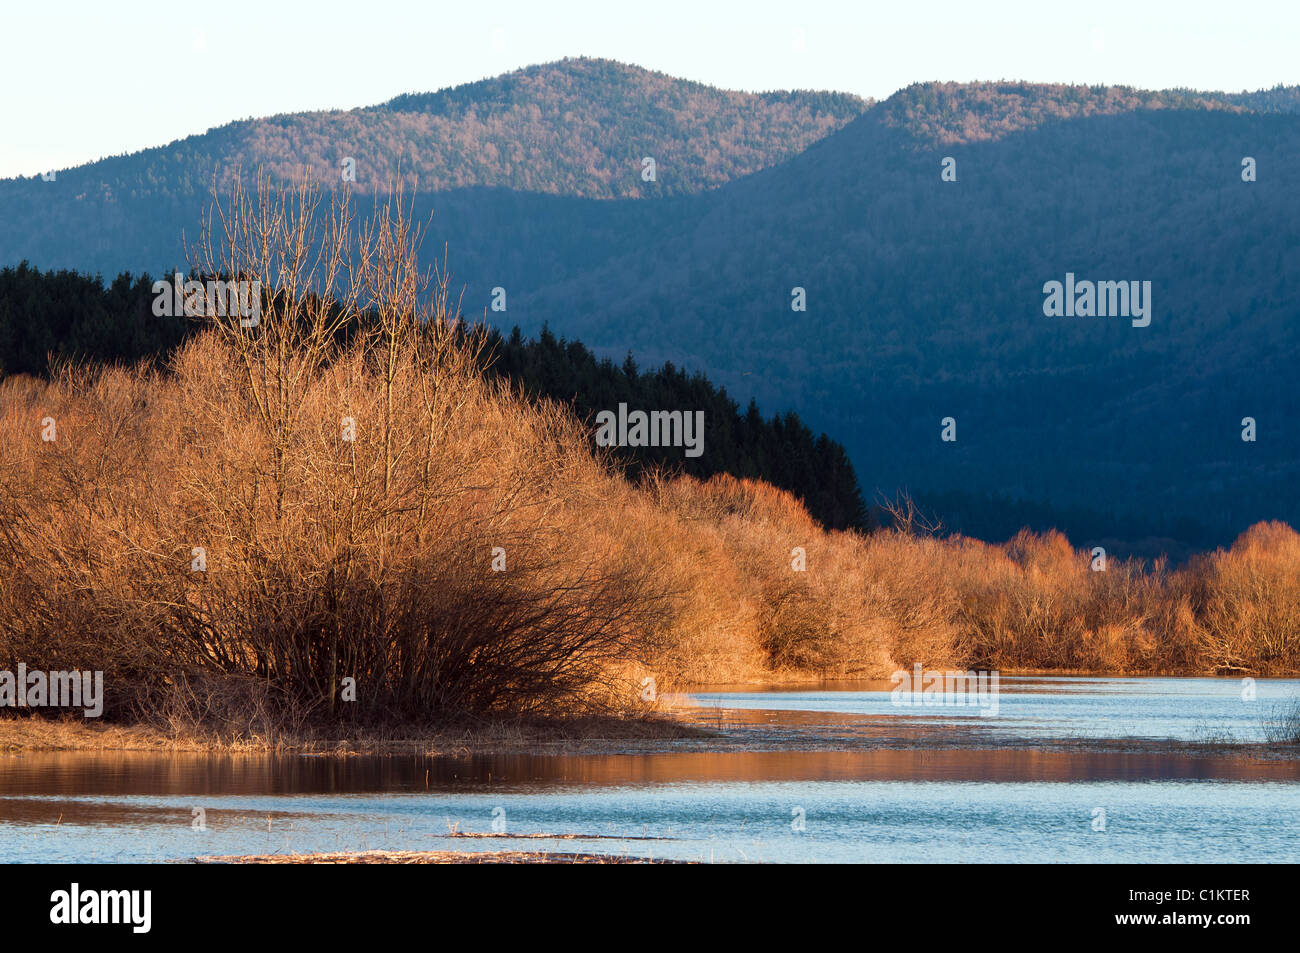 Cerknica lake, Sloveni Stock Photo